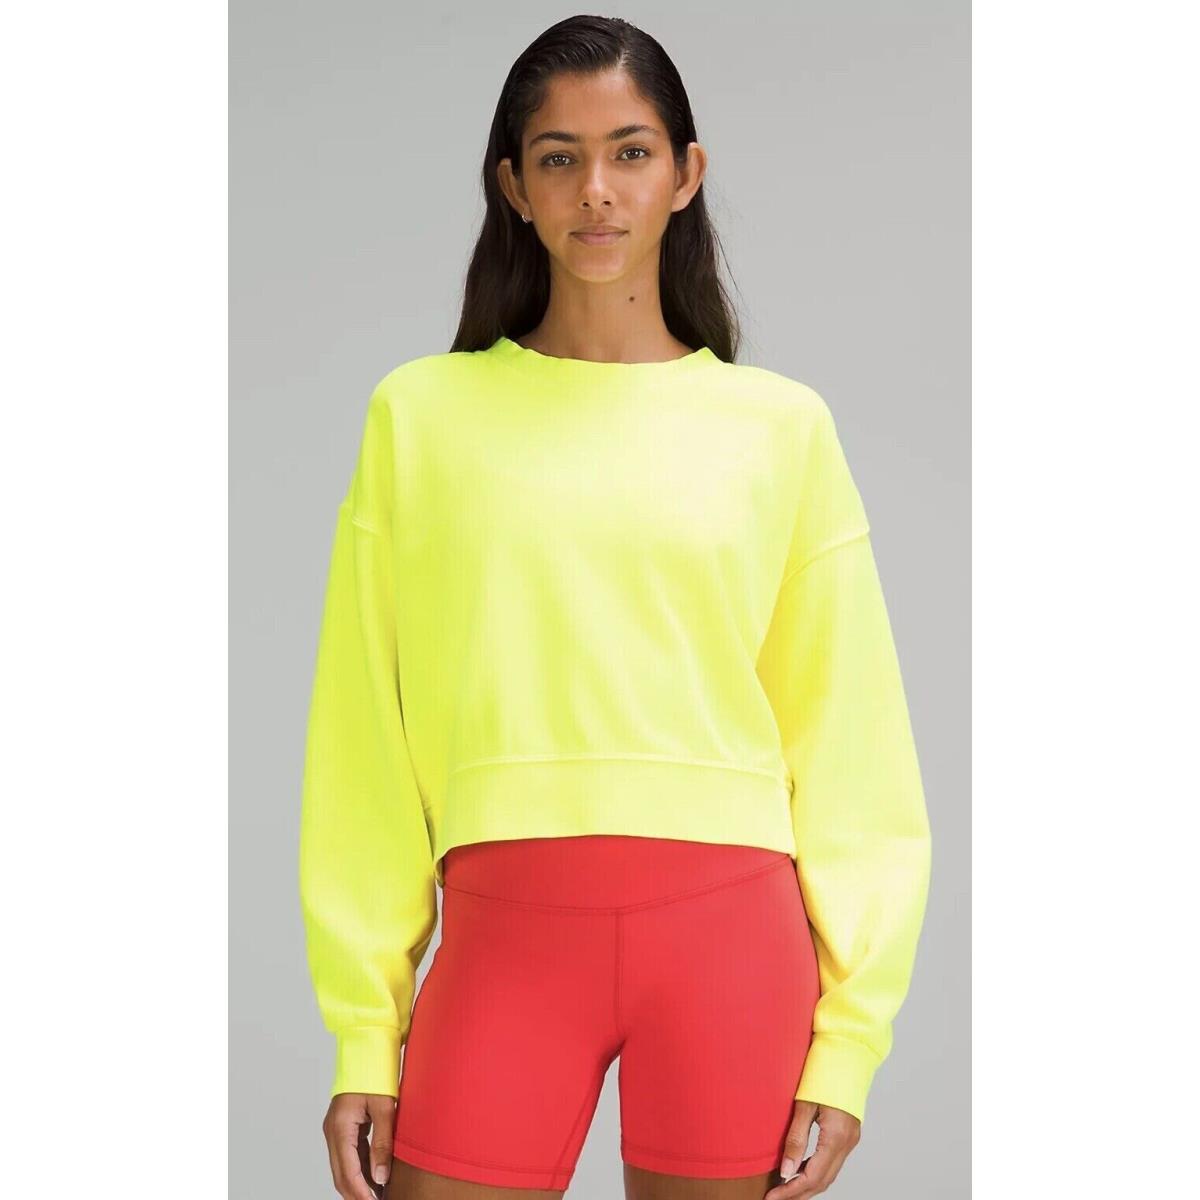 Lululemon clothing  - Neon Wash Yellow 8